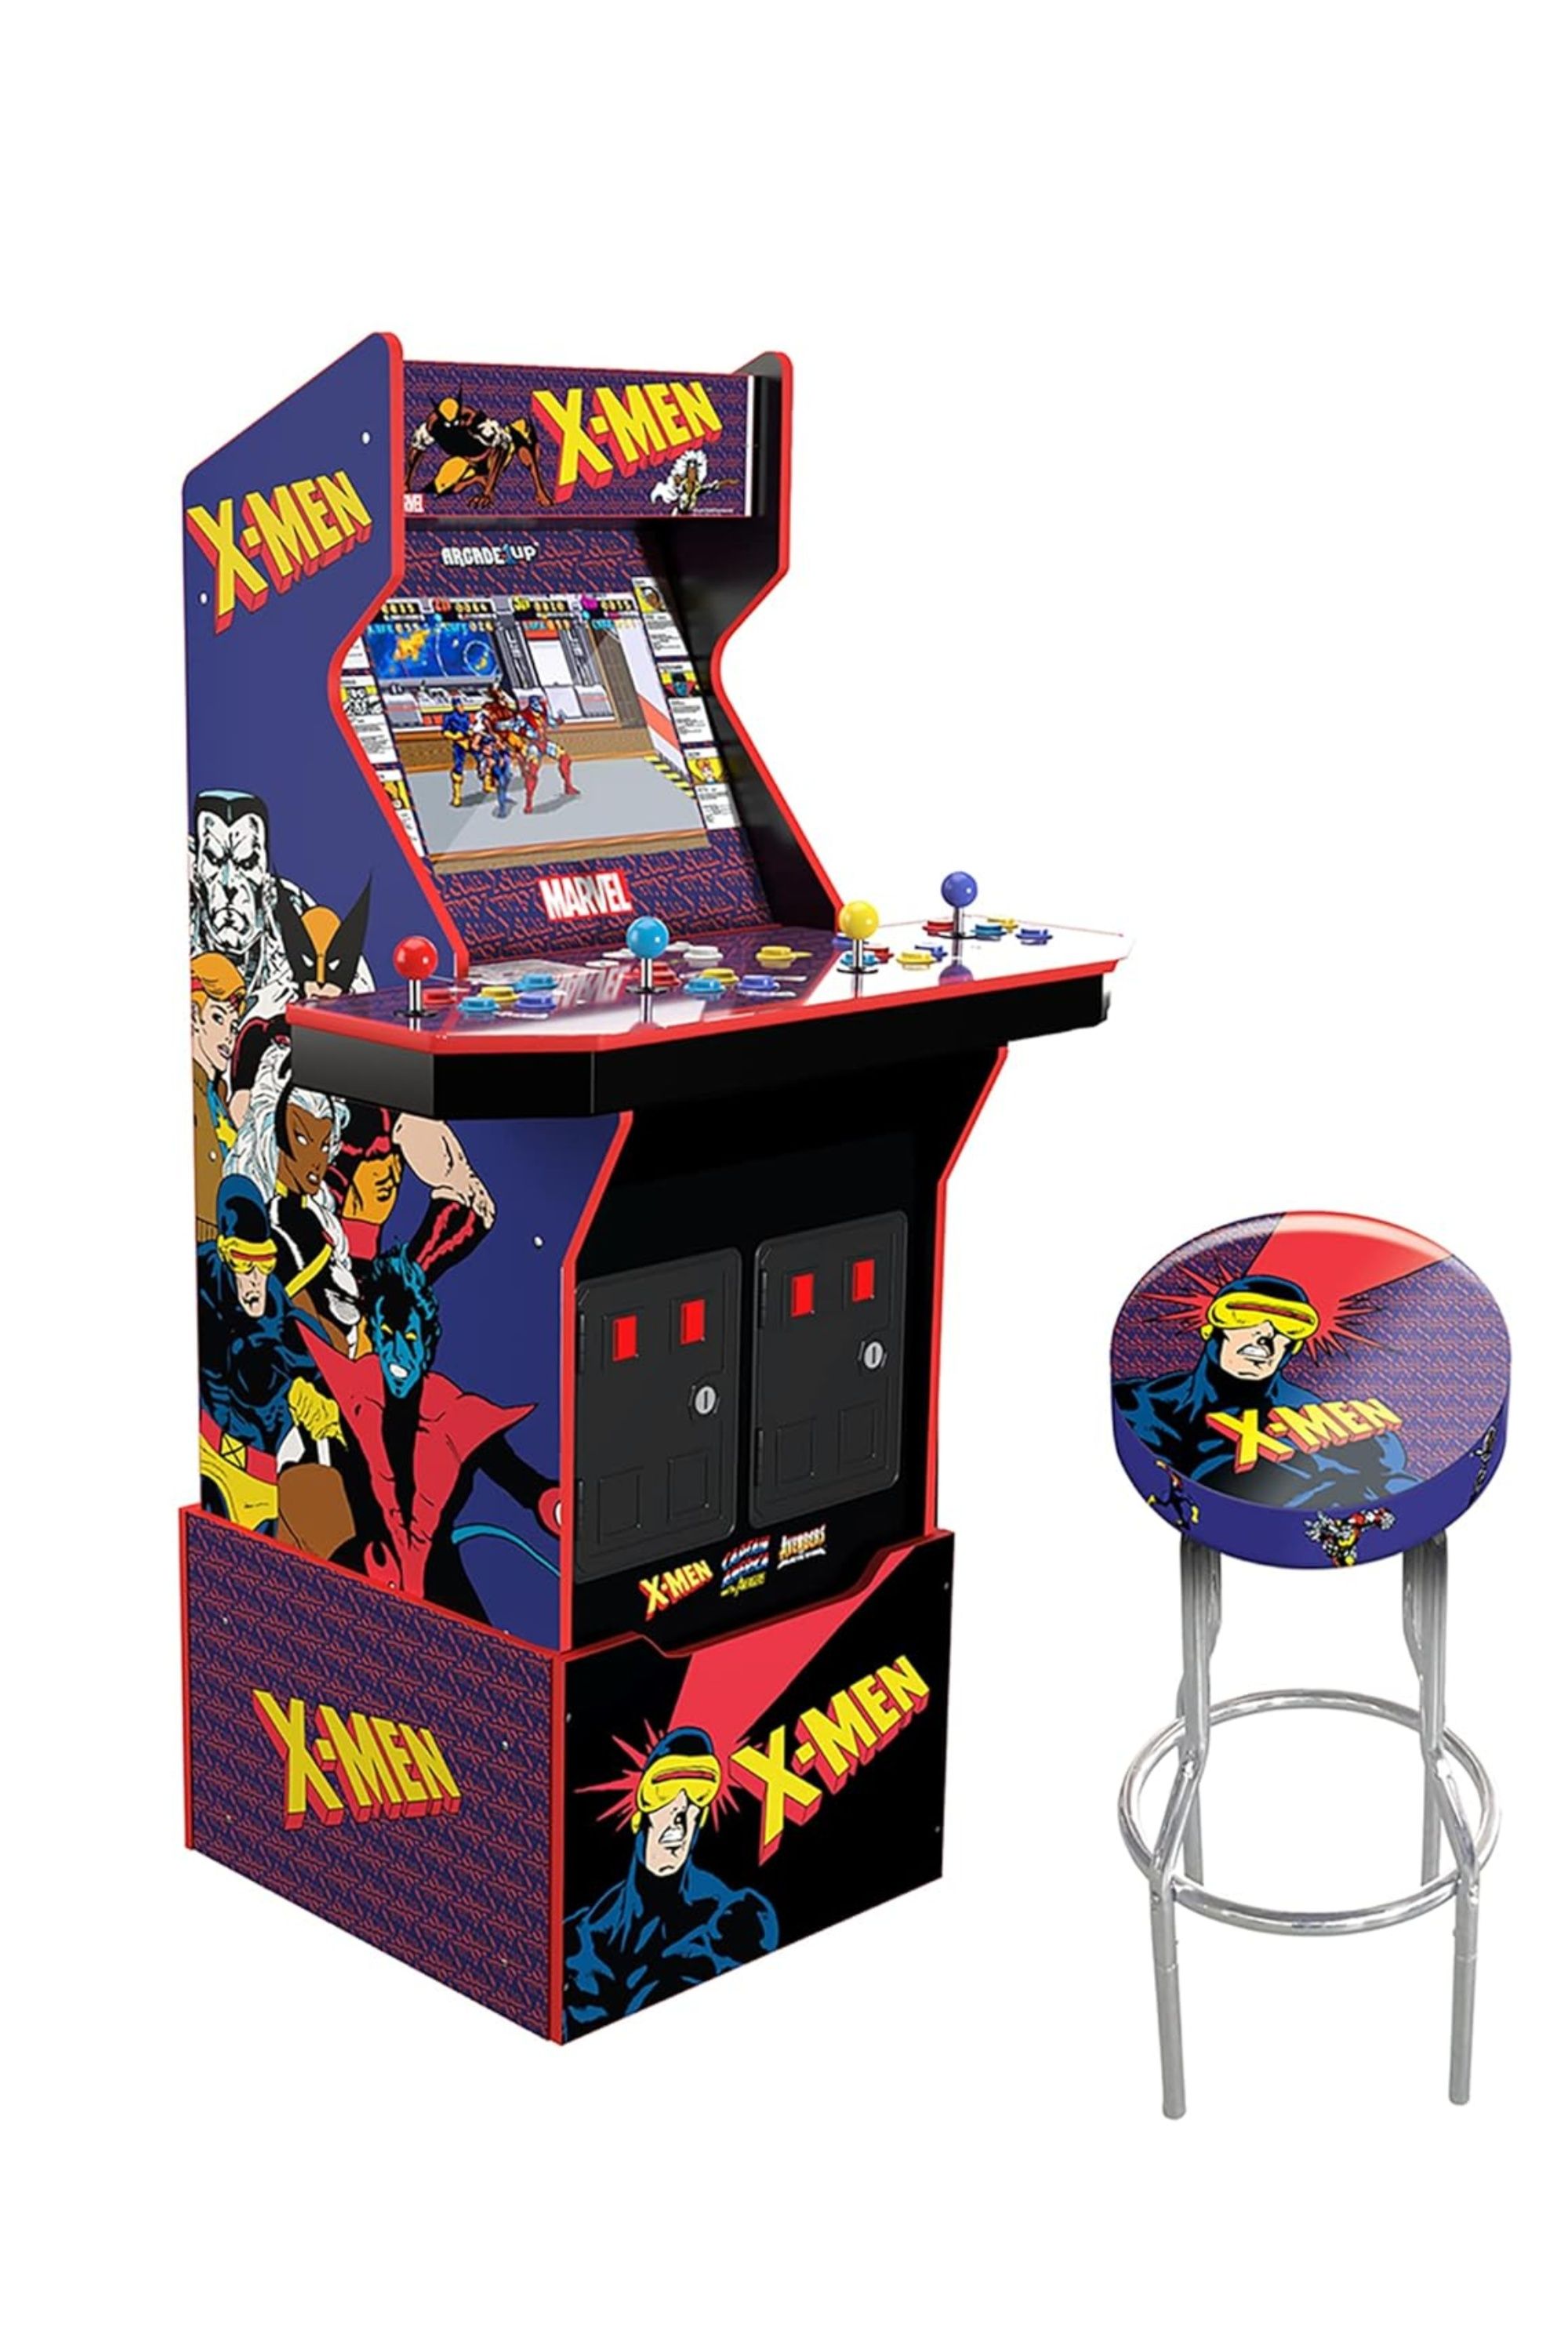 arcade 1up x-men arcade machine